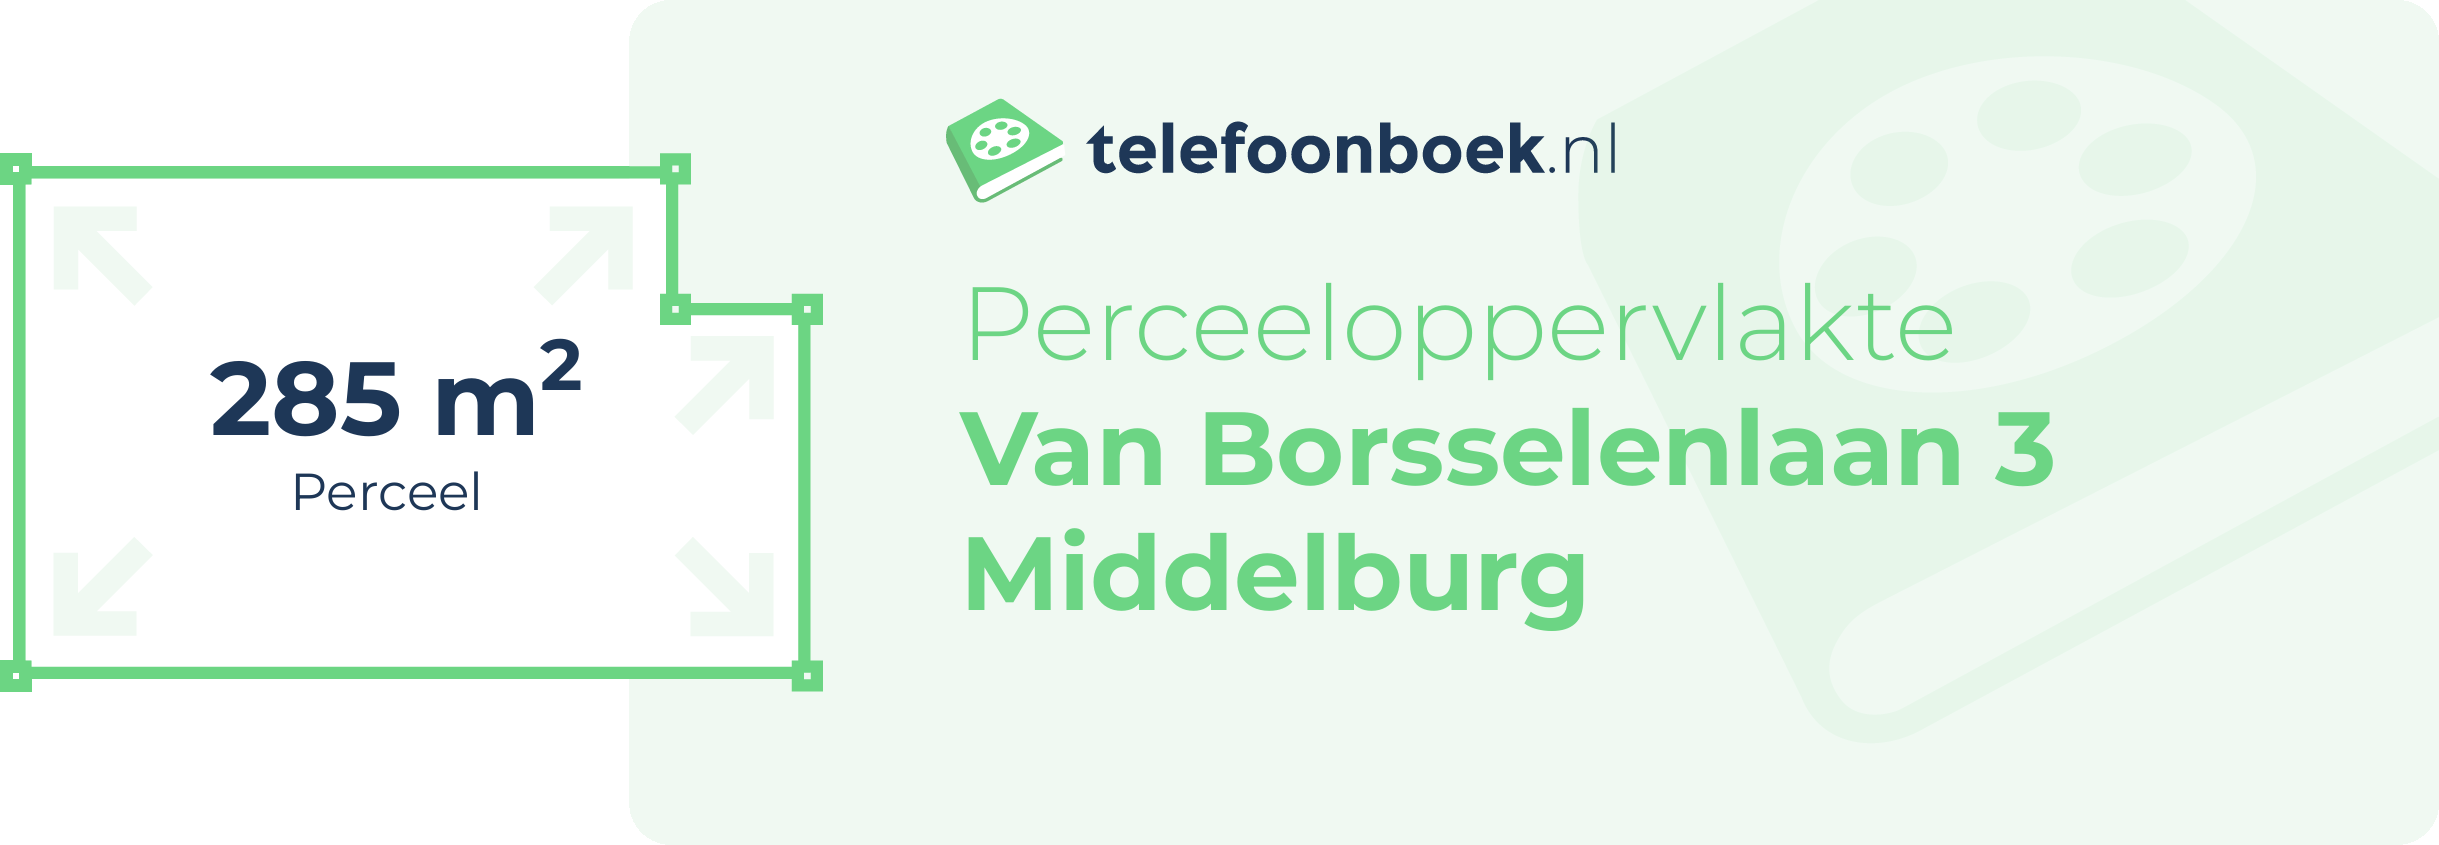 Perceeloppervlakte Van Borsselenlaan 3 Middelburg